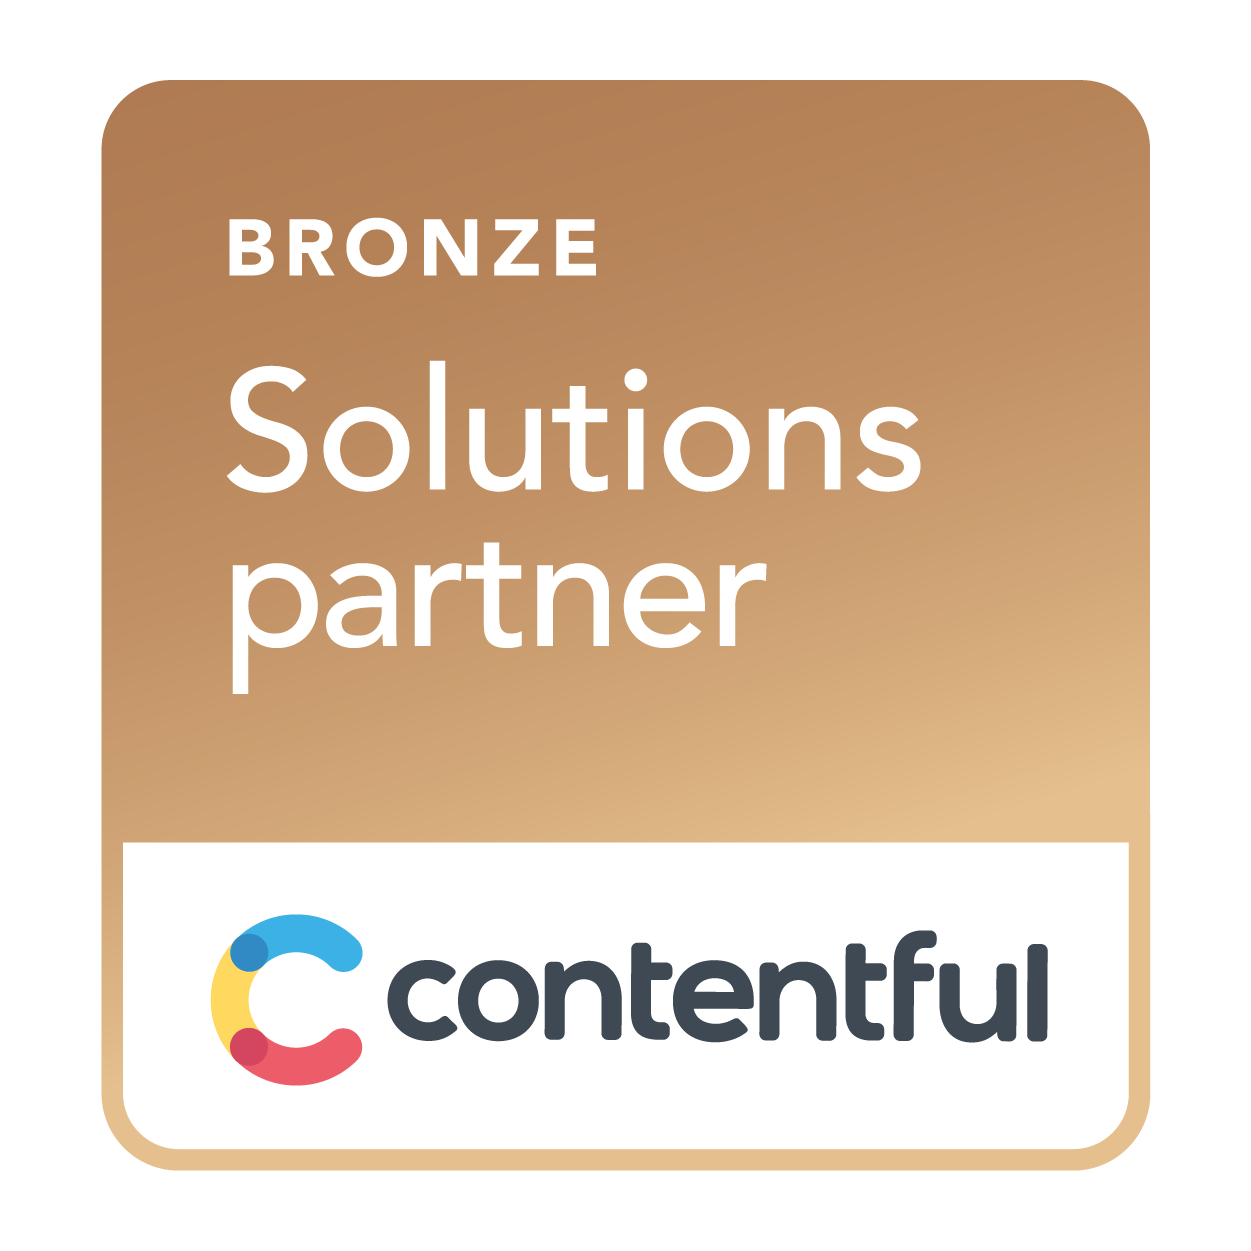 Contentful Bronze Solutions Partner